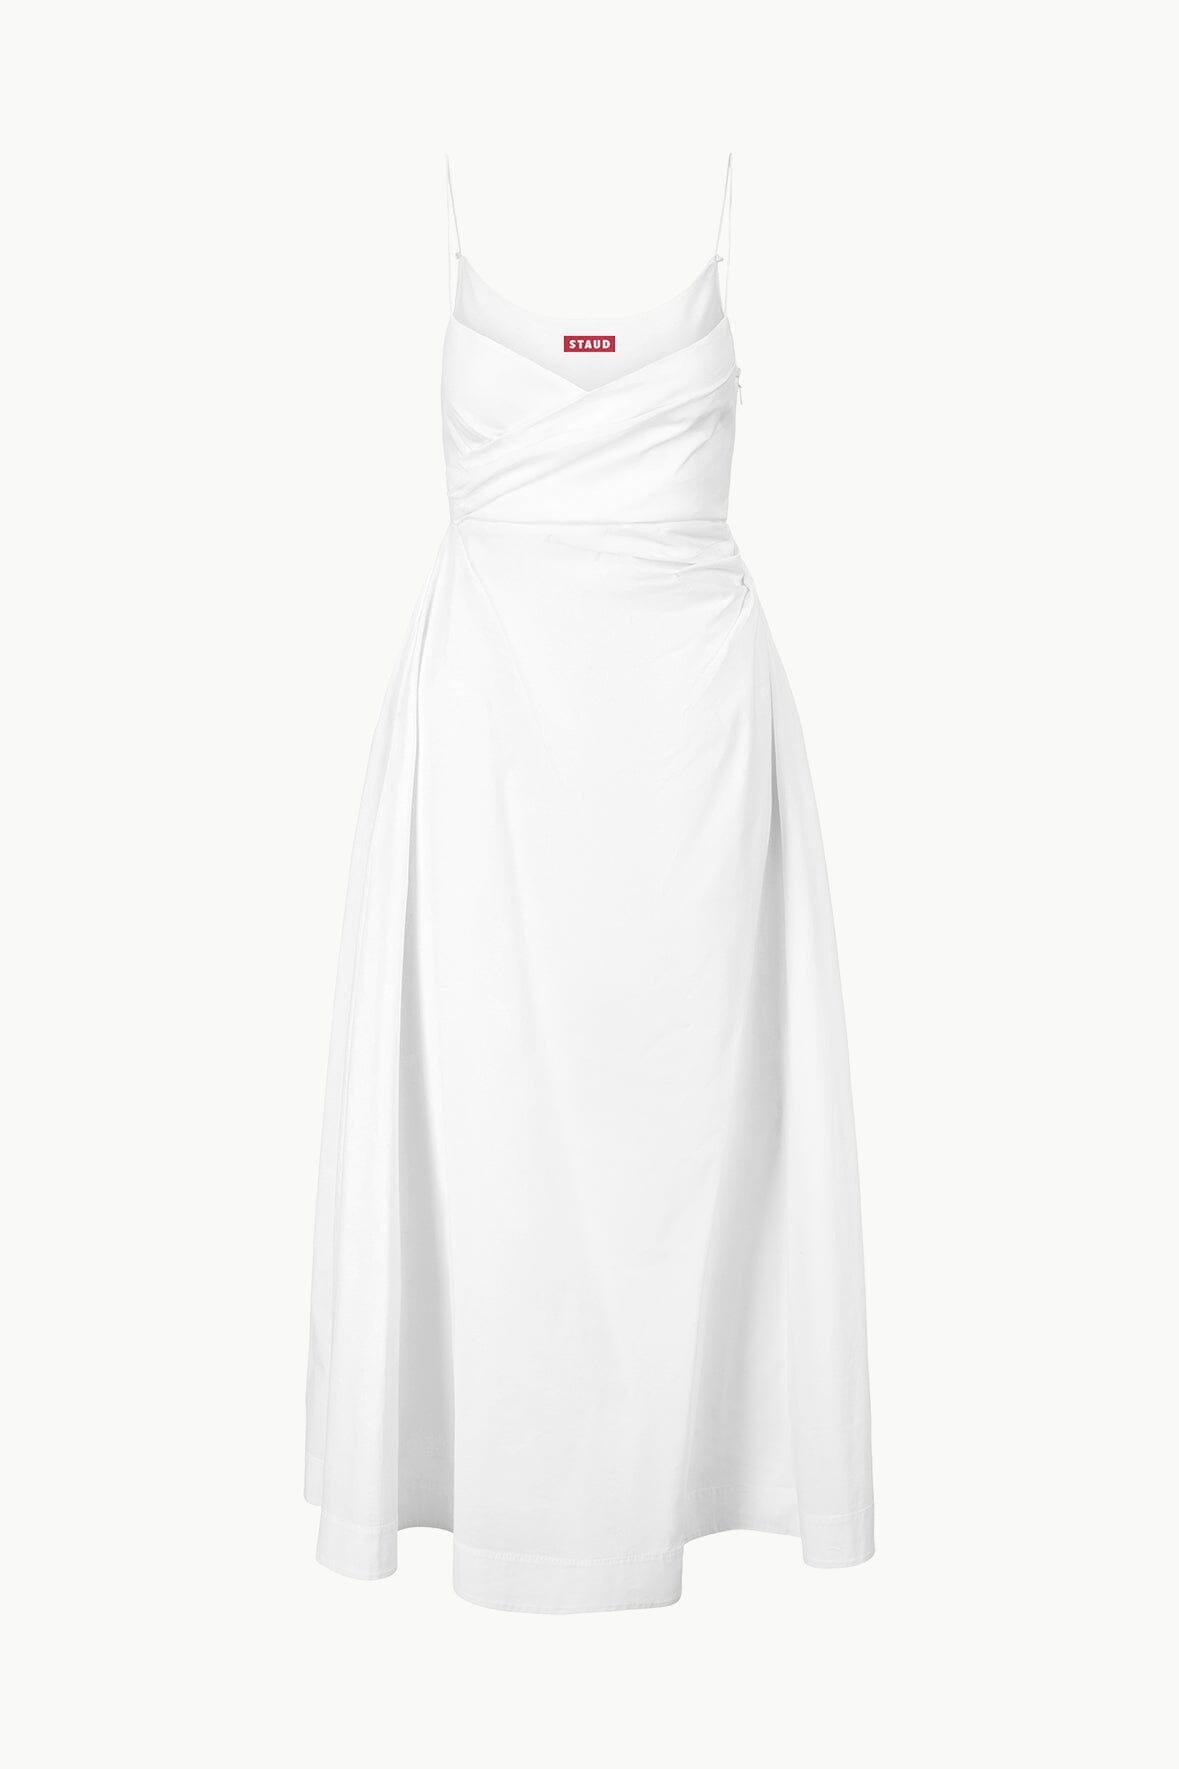 STAUD SARAH DRESS WHITE - 1